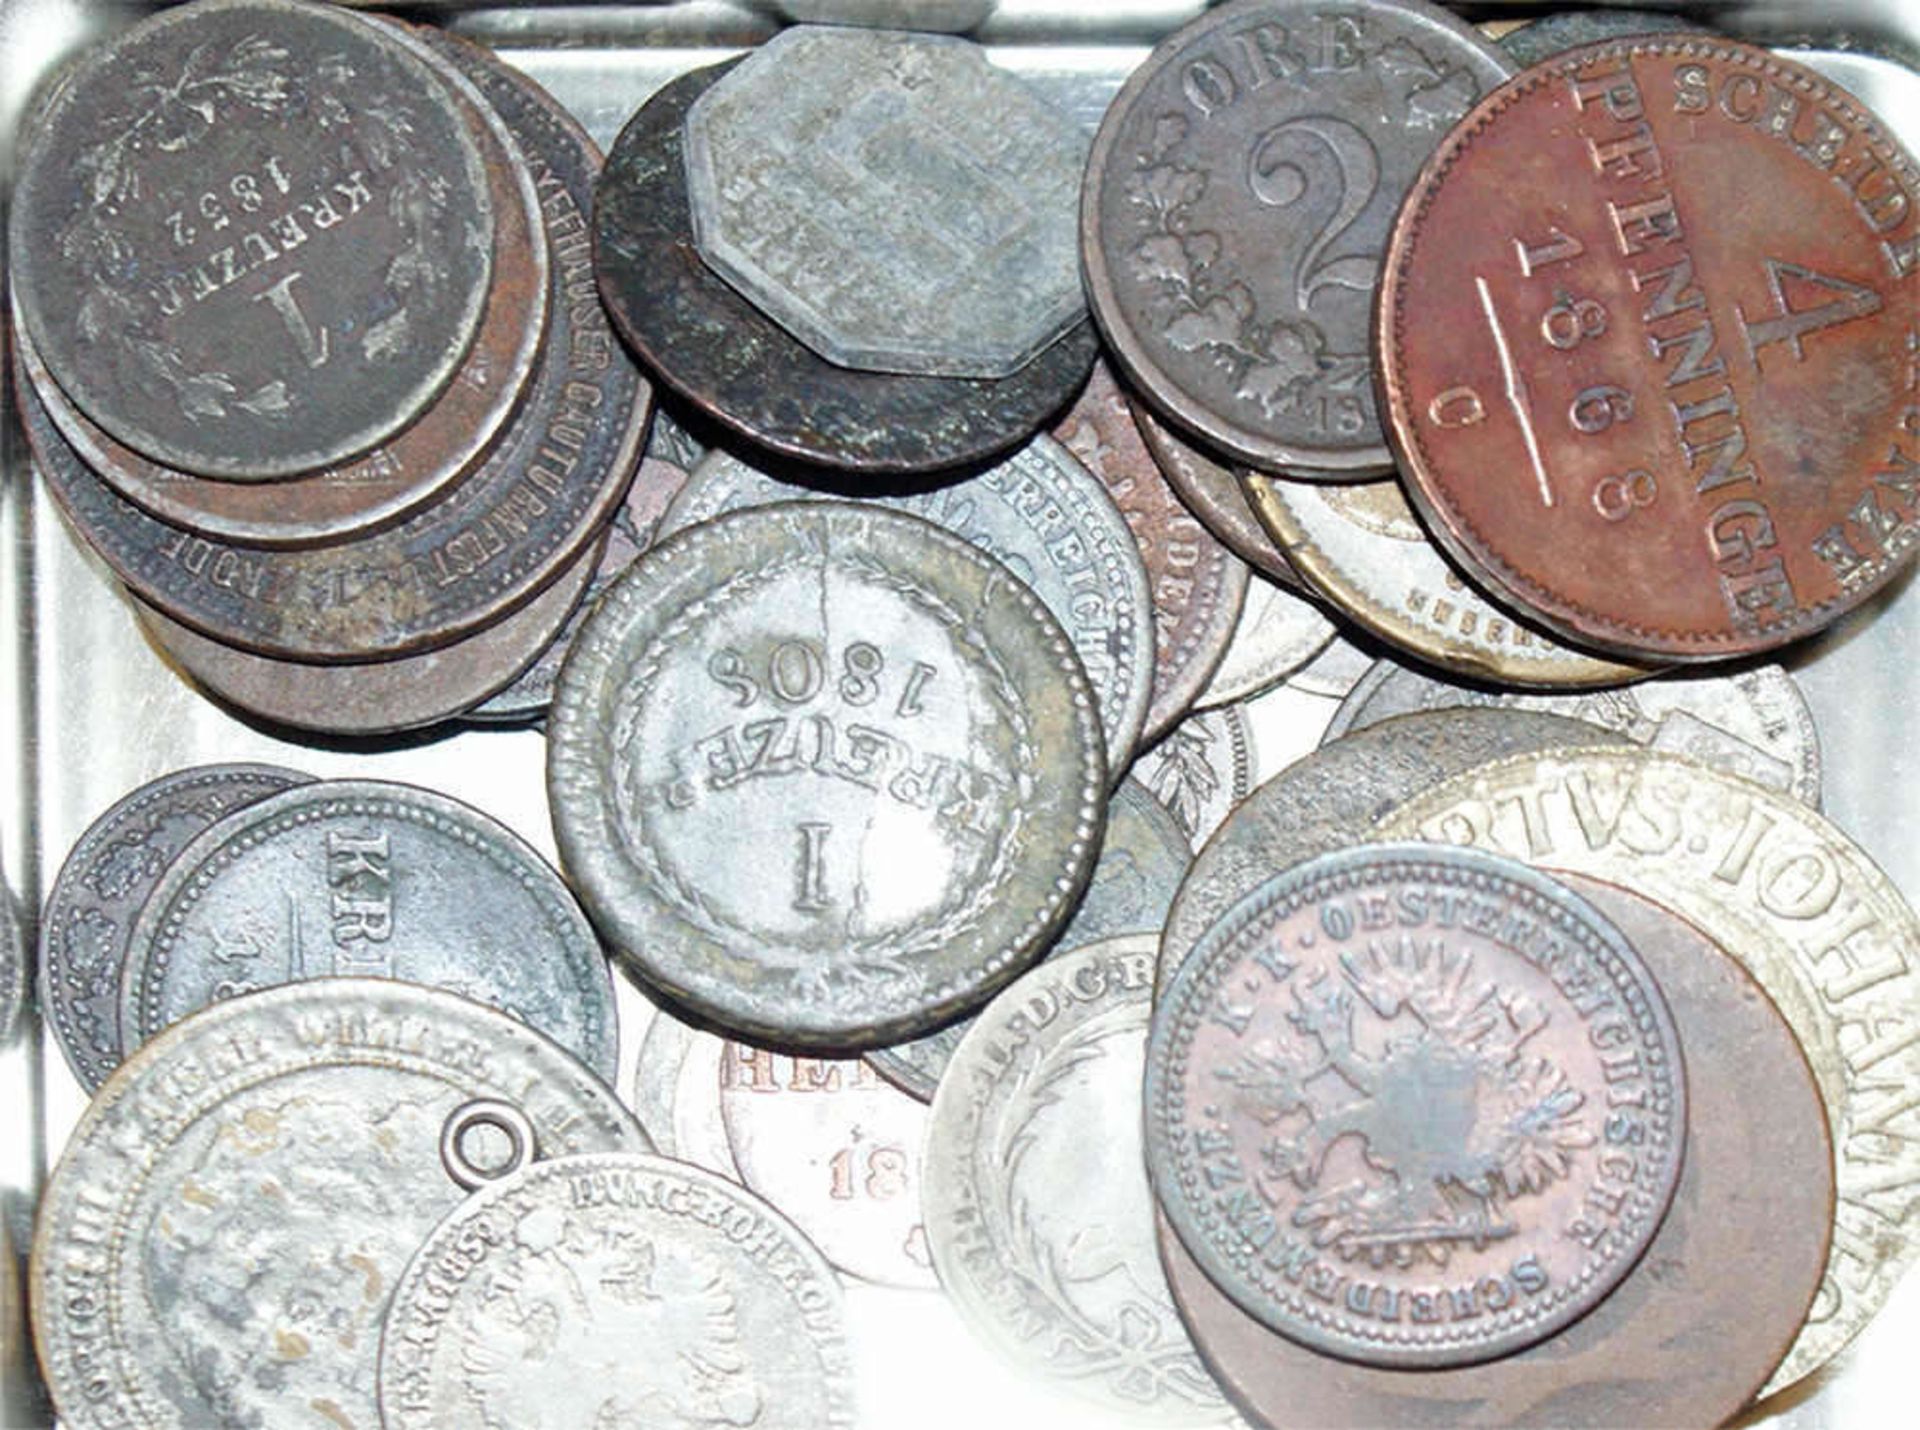 Lot ältere Münzen, dabei z.B. Holland 1736, etc. Schöne Fundgrube. - Bild 3 aus 3